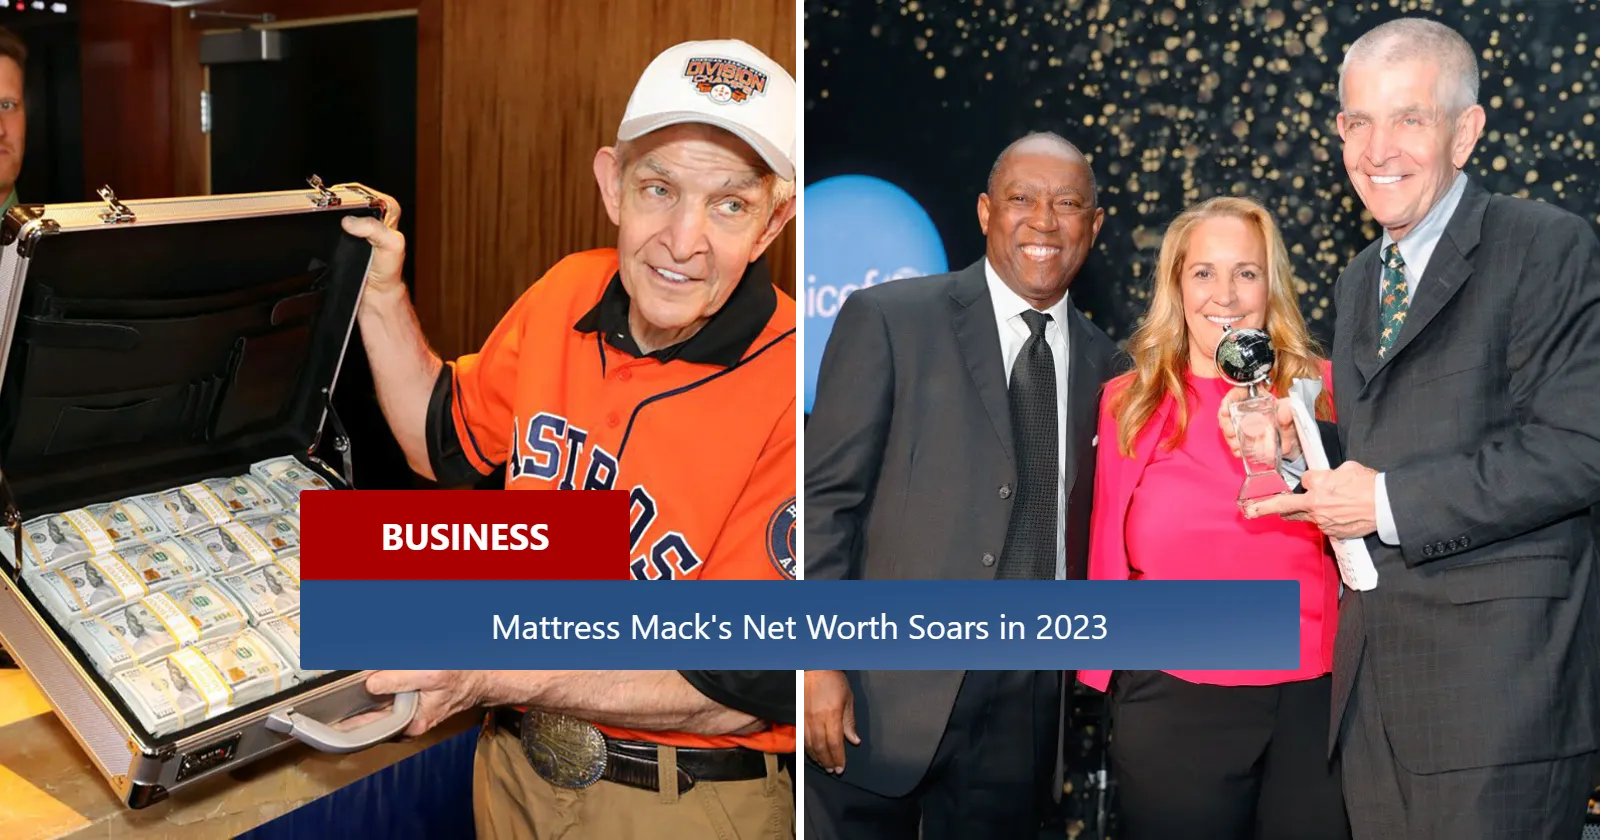 Mattress Mack's Net Worth Soars in 2023 